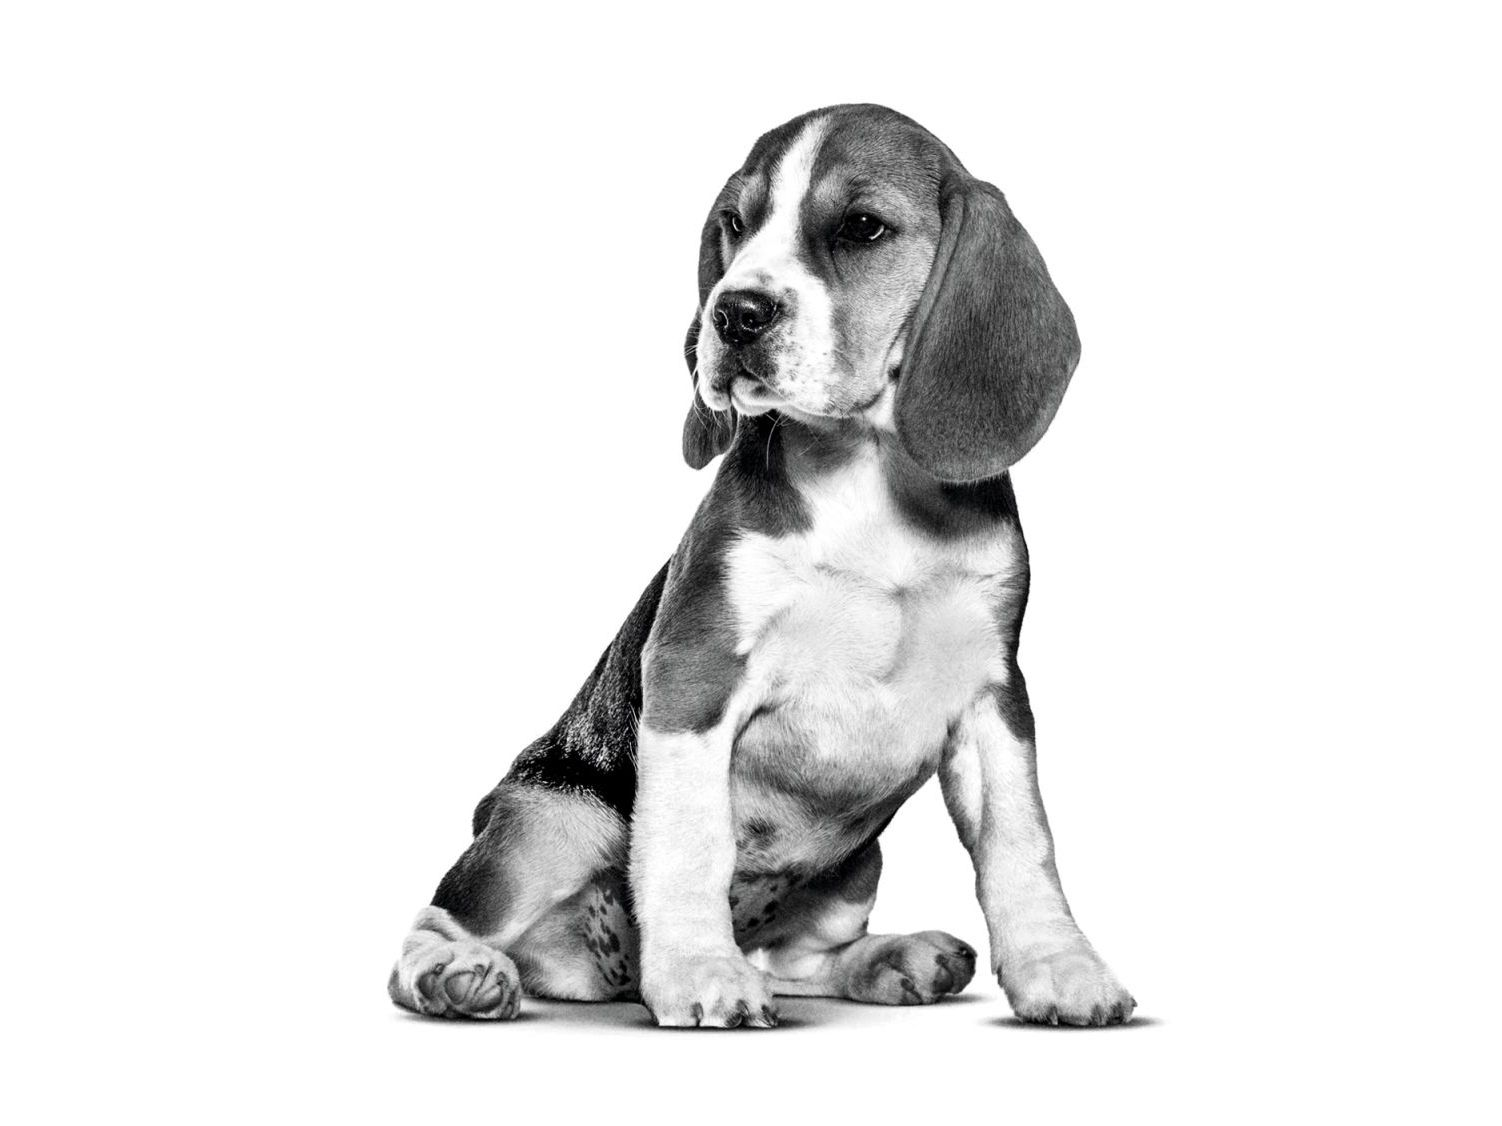 Beagle cachorro en blanco y negro sentado